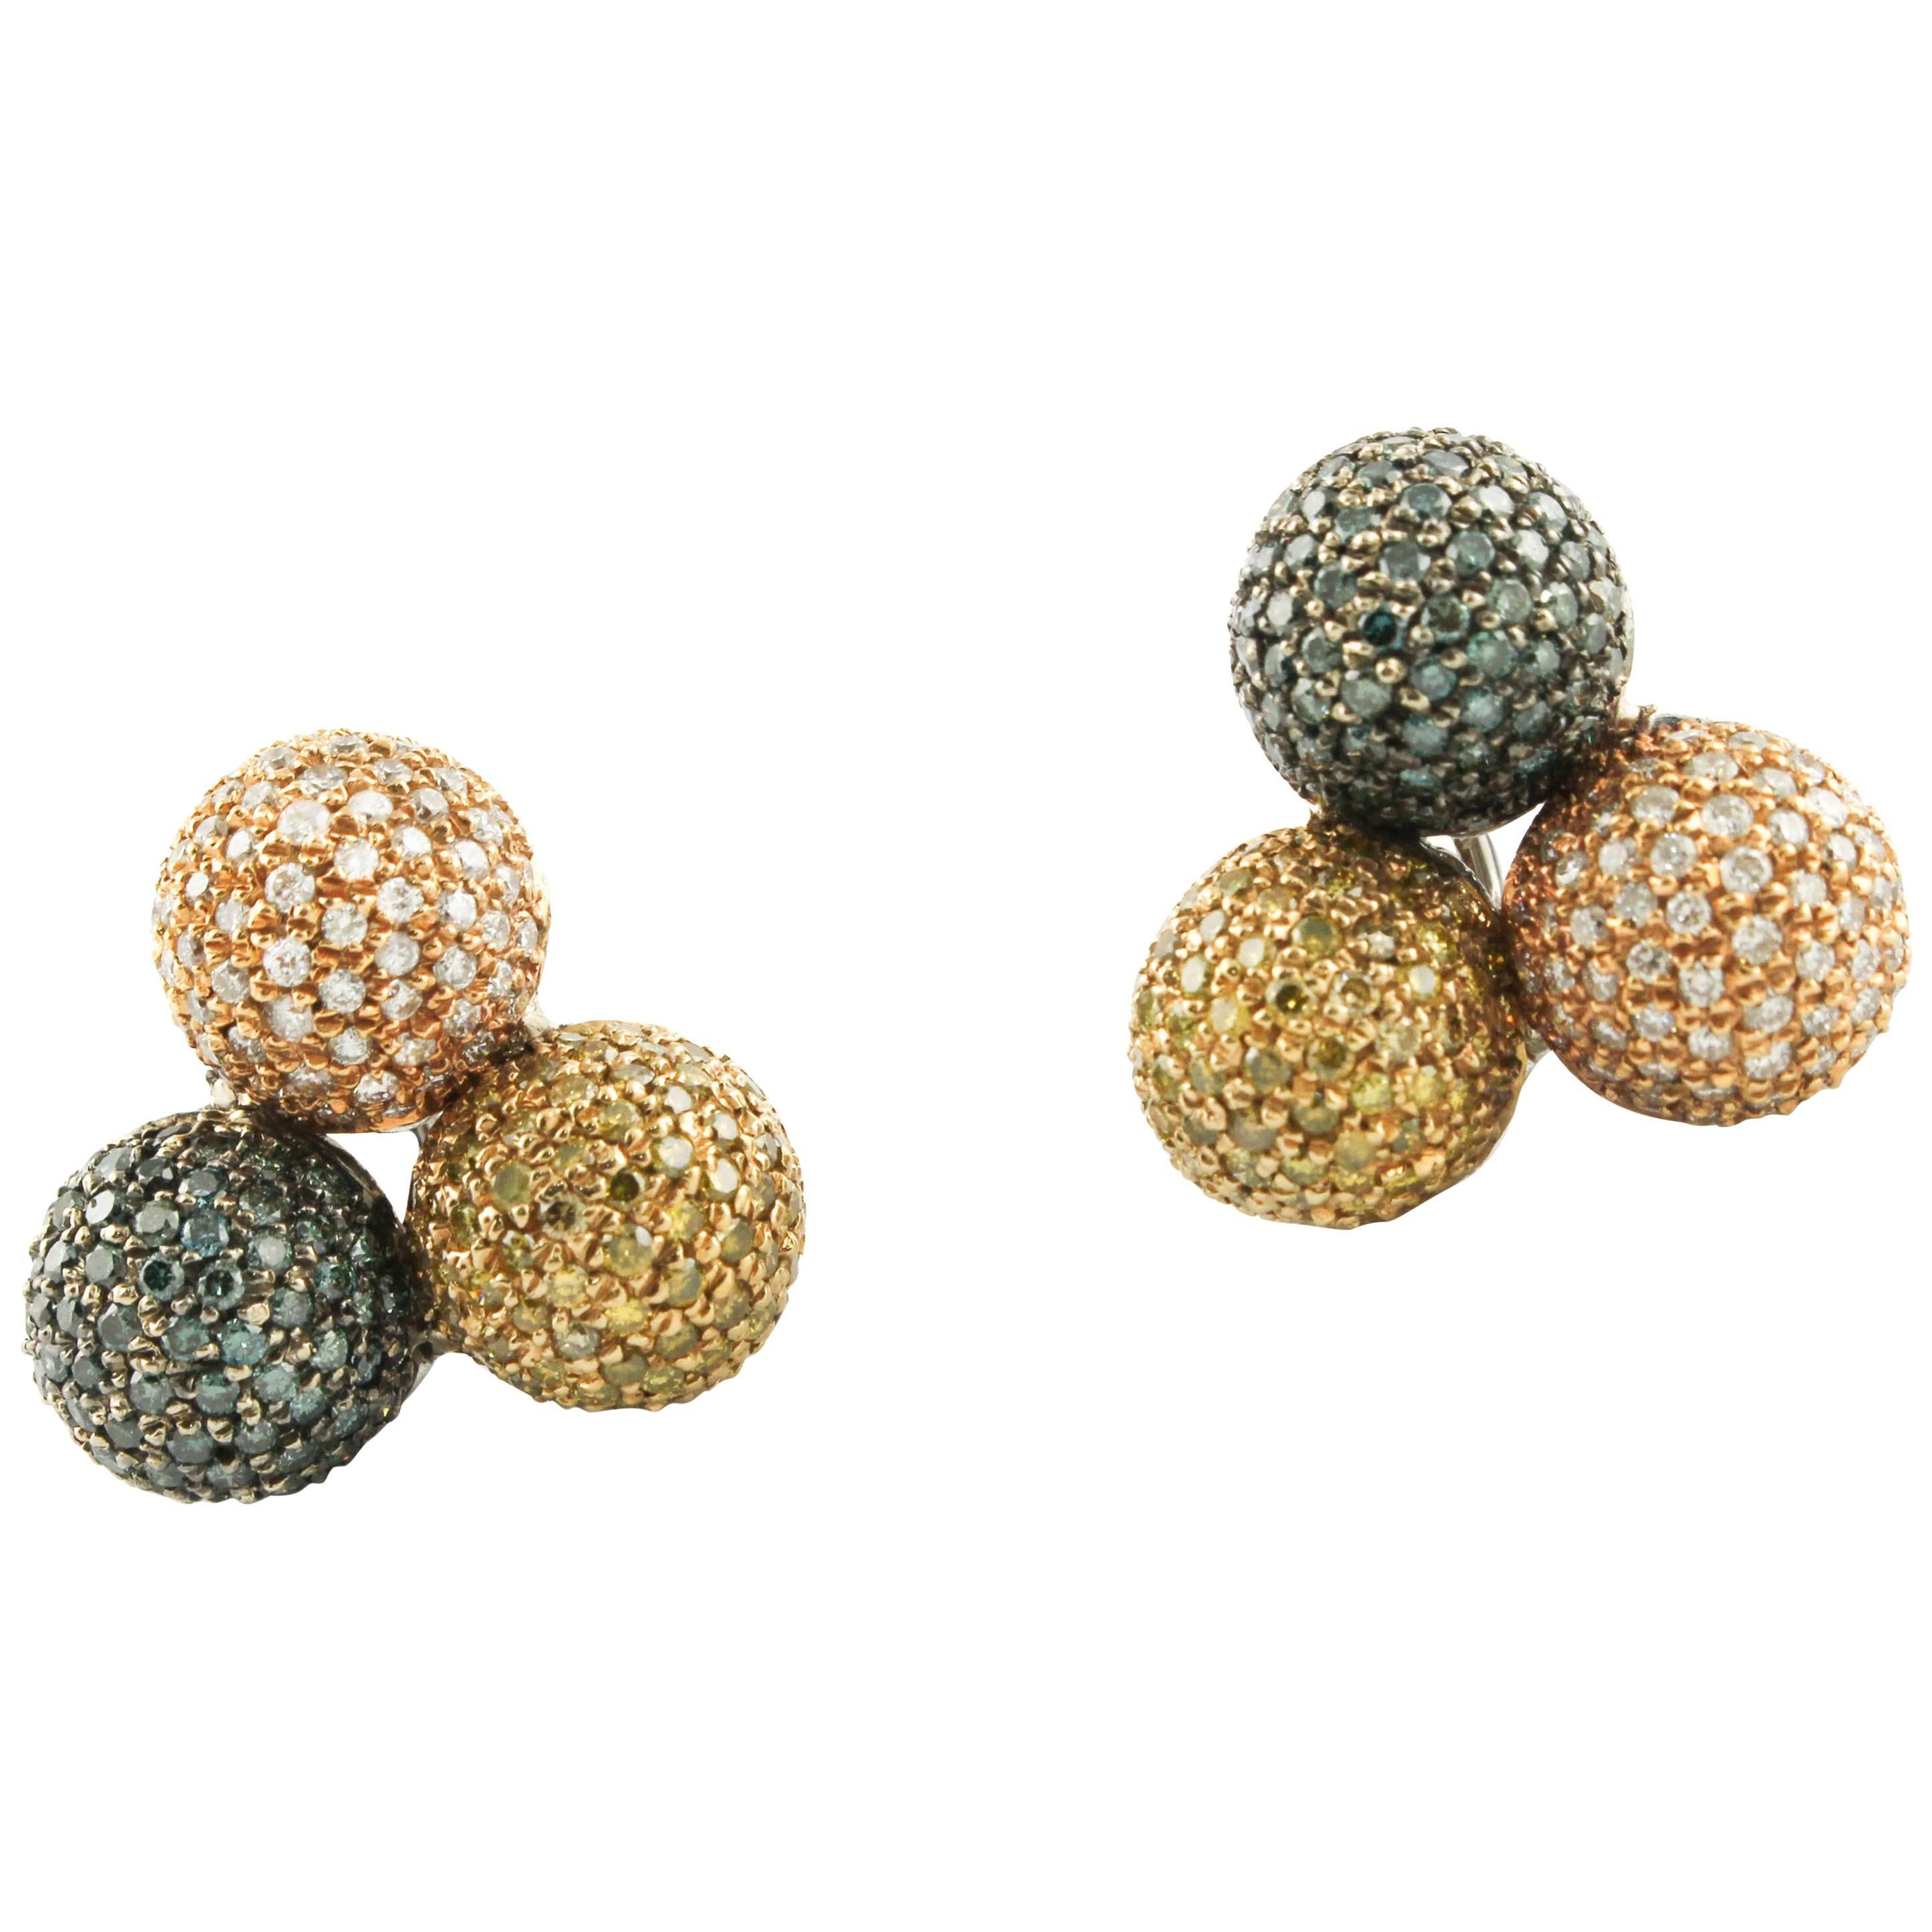  Fancy Diamond, 18 kt  Rose Gold Spheres Earrings For Sale